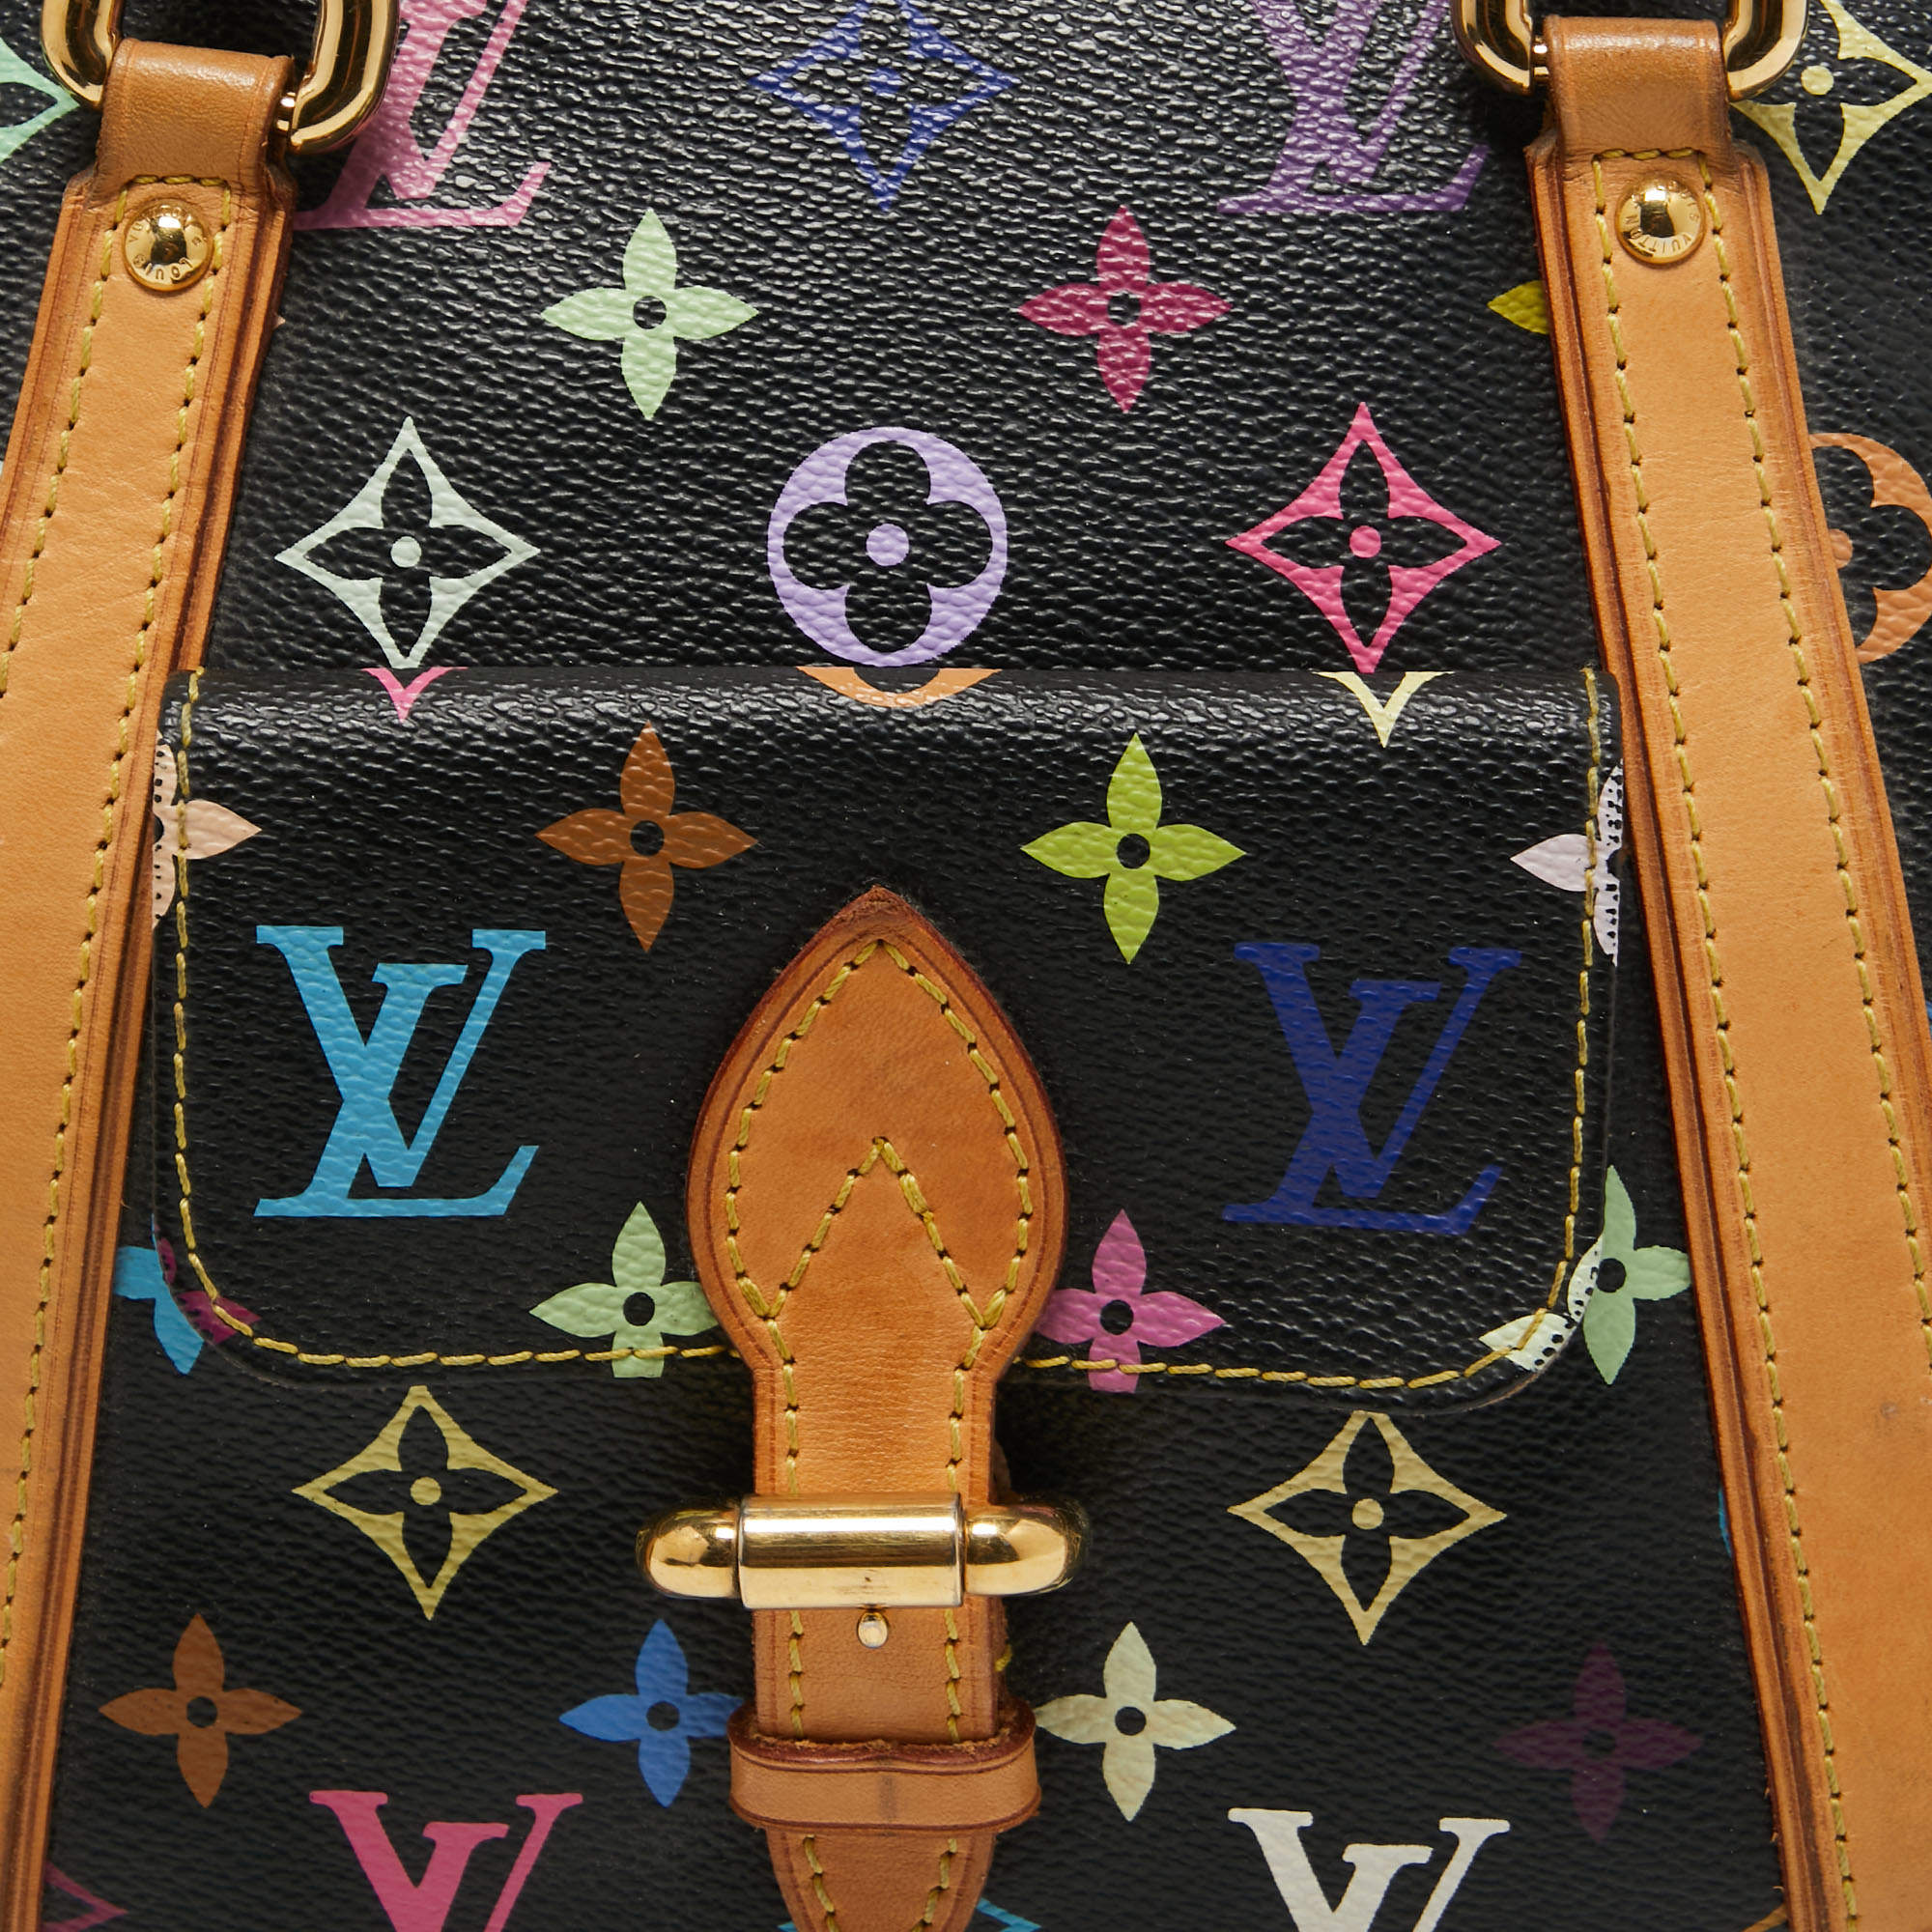 Priscilla cloth handbag Louis Vuitton Black in Cloth - 19819141